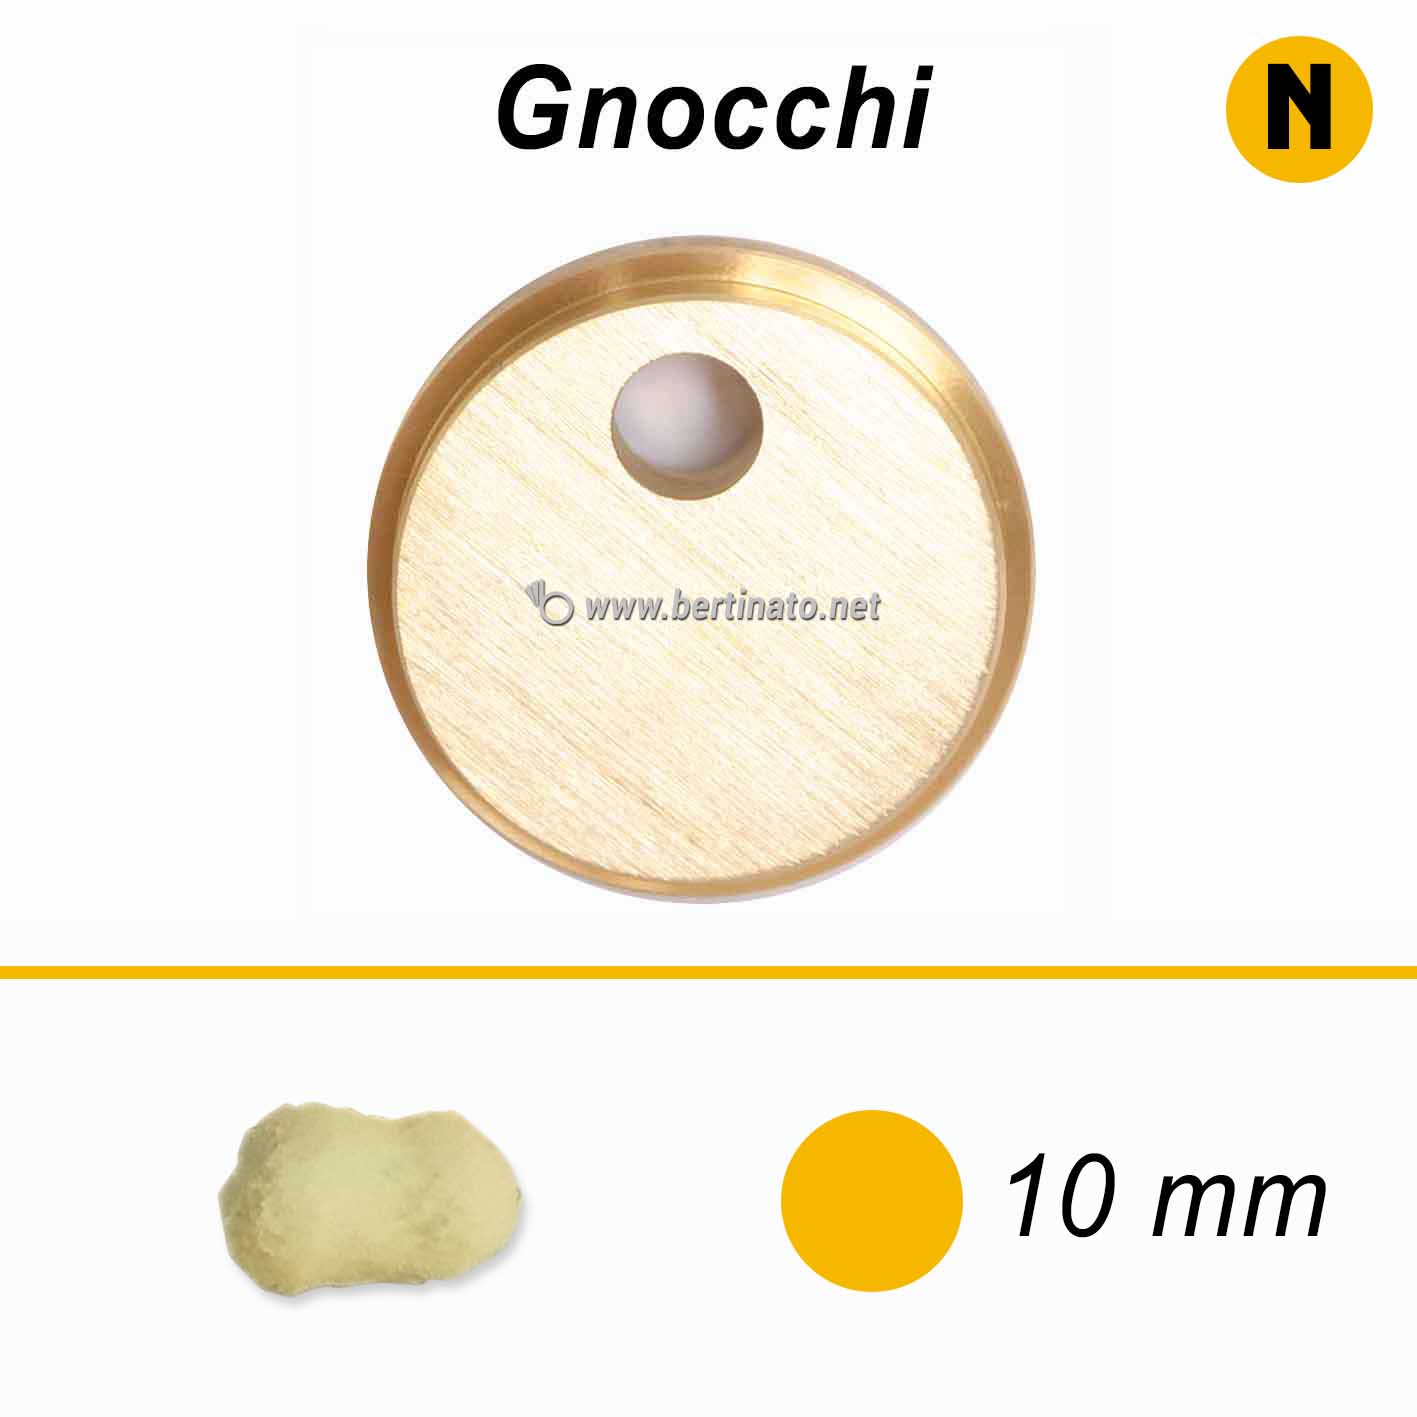 Trafila Gnocchi - La Fattorina Macchina con tagliapasta automatico per fare  la pasta fresca